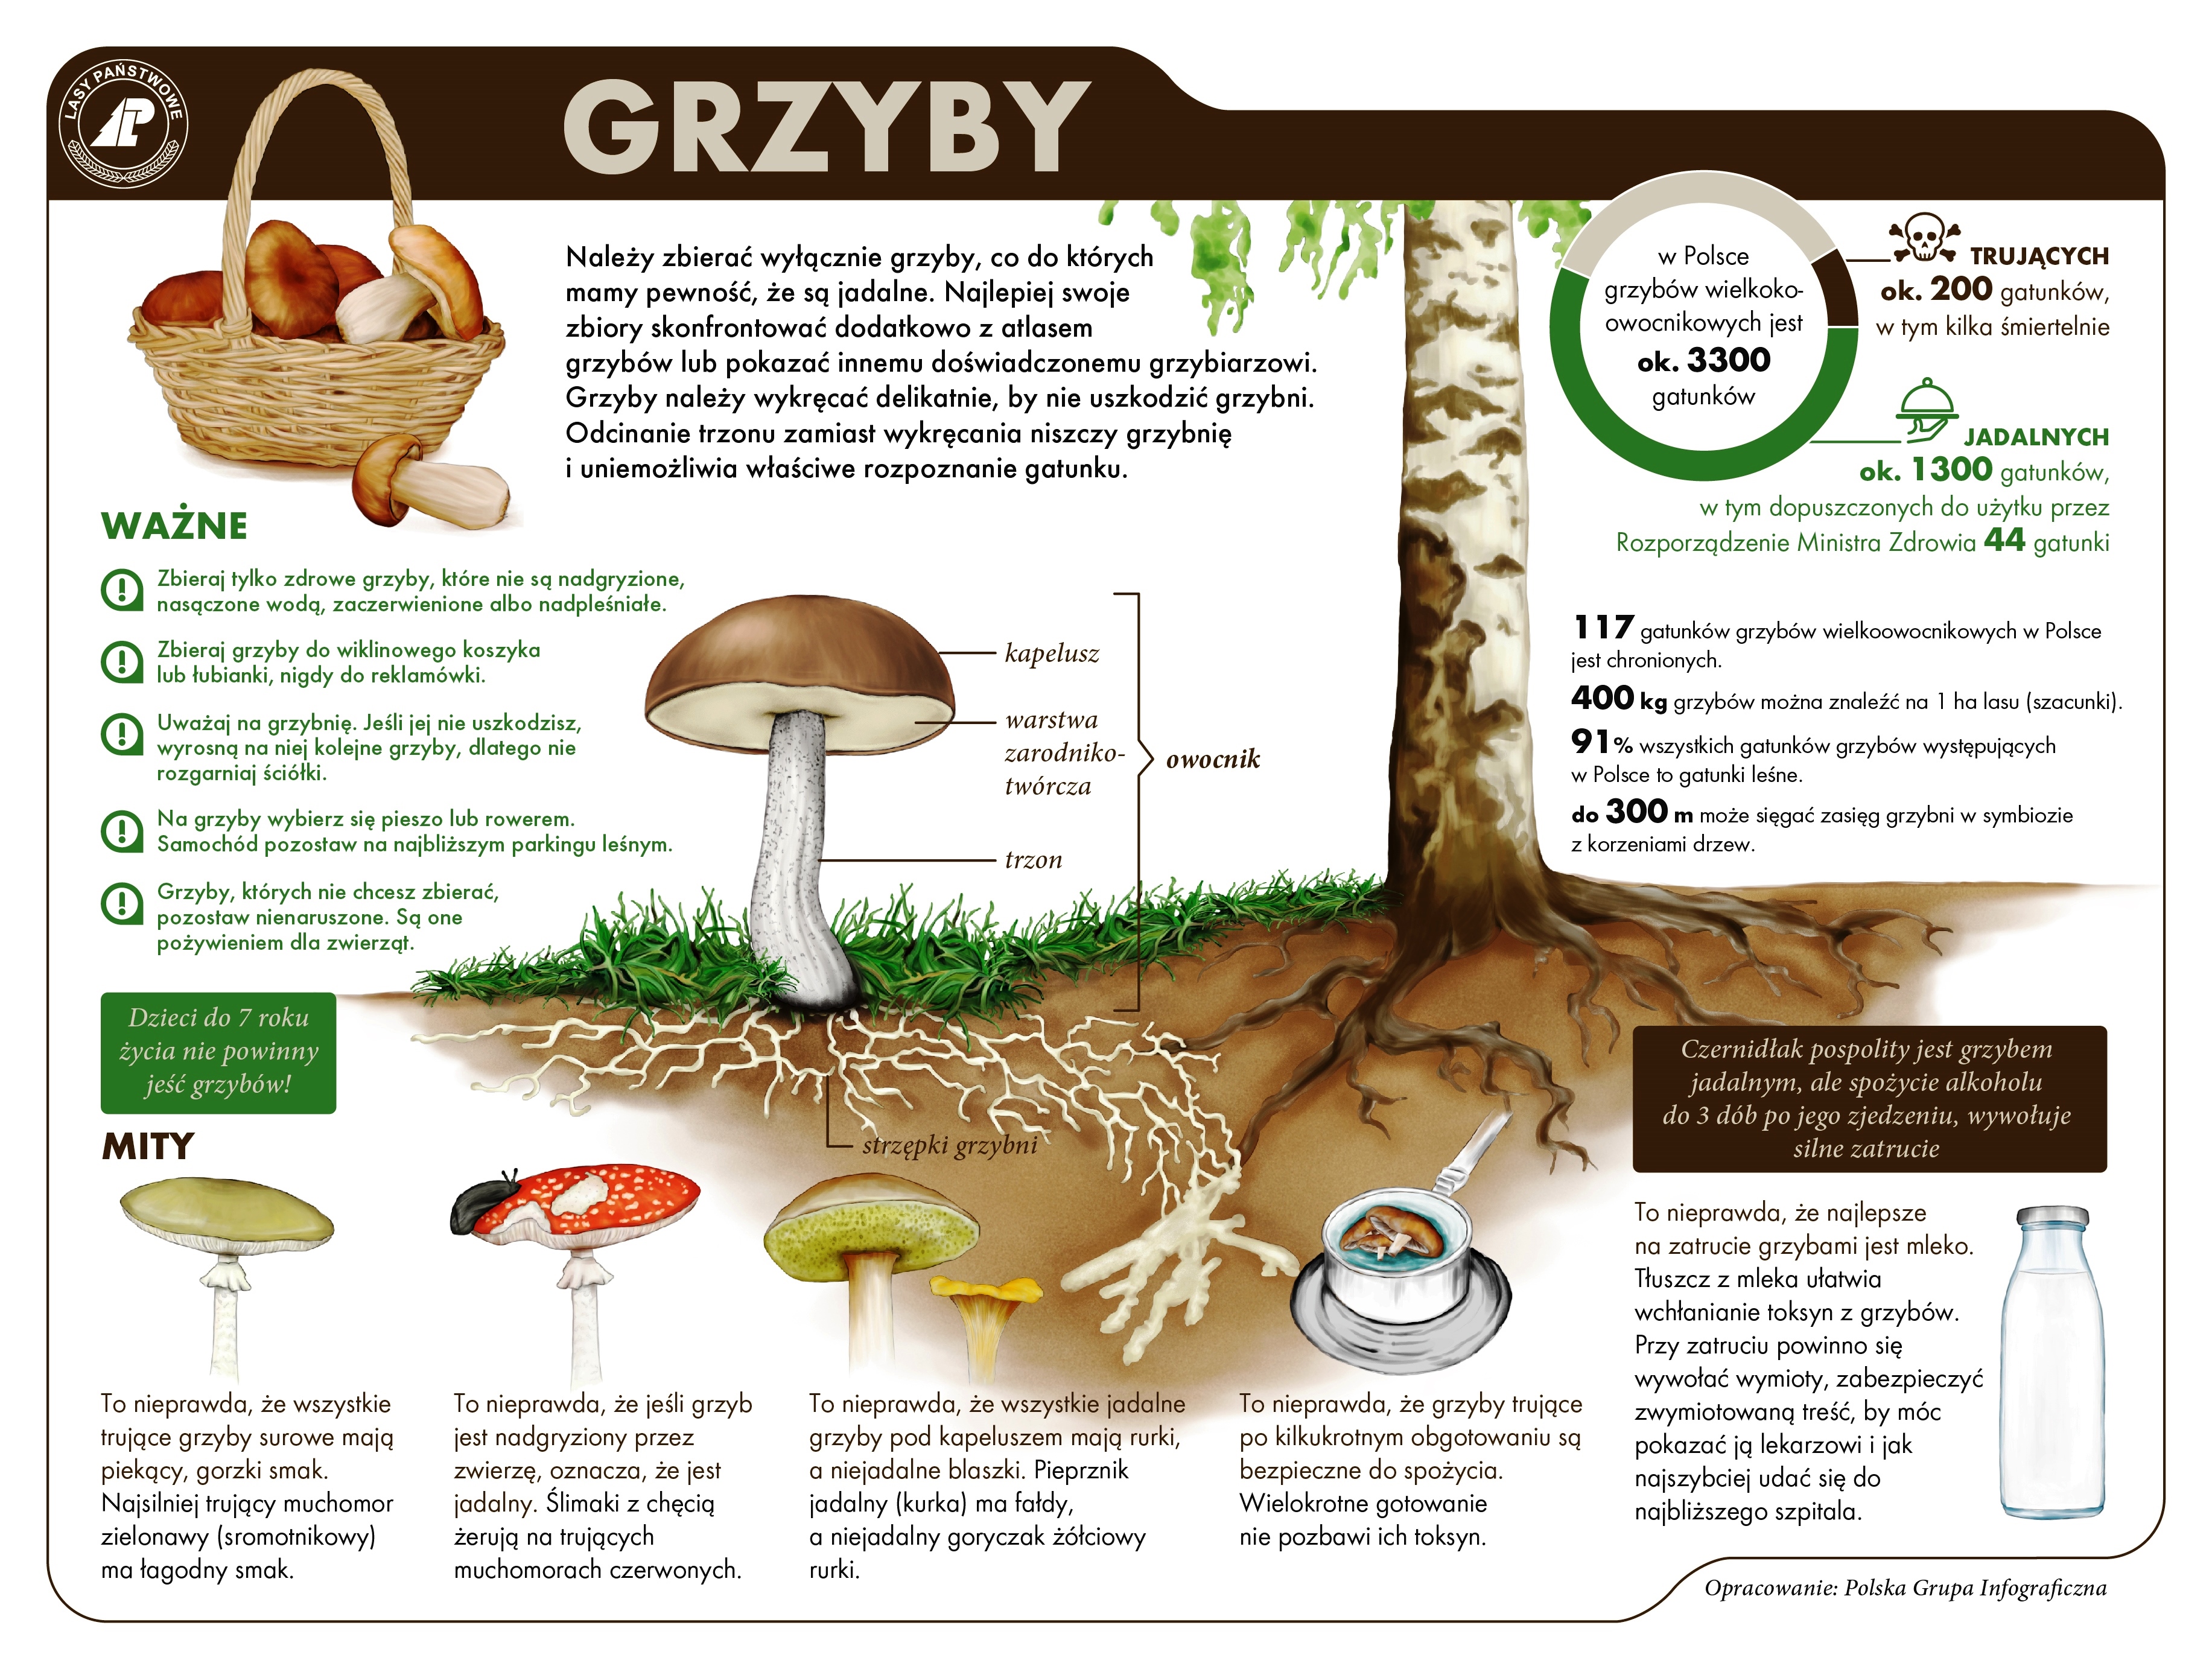 Fot. Infografika Lasów Państwowych o grzybach.